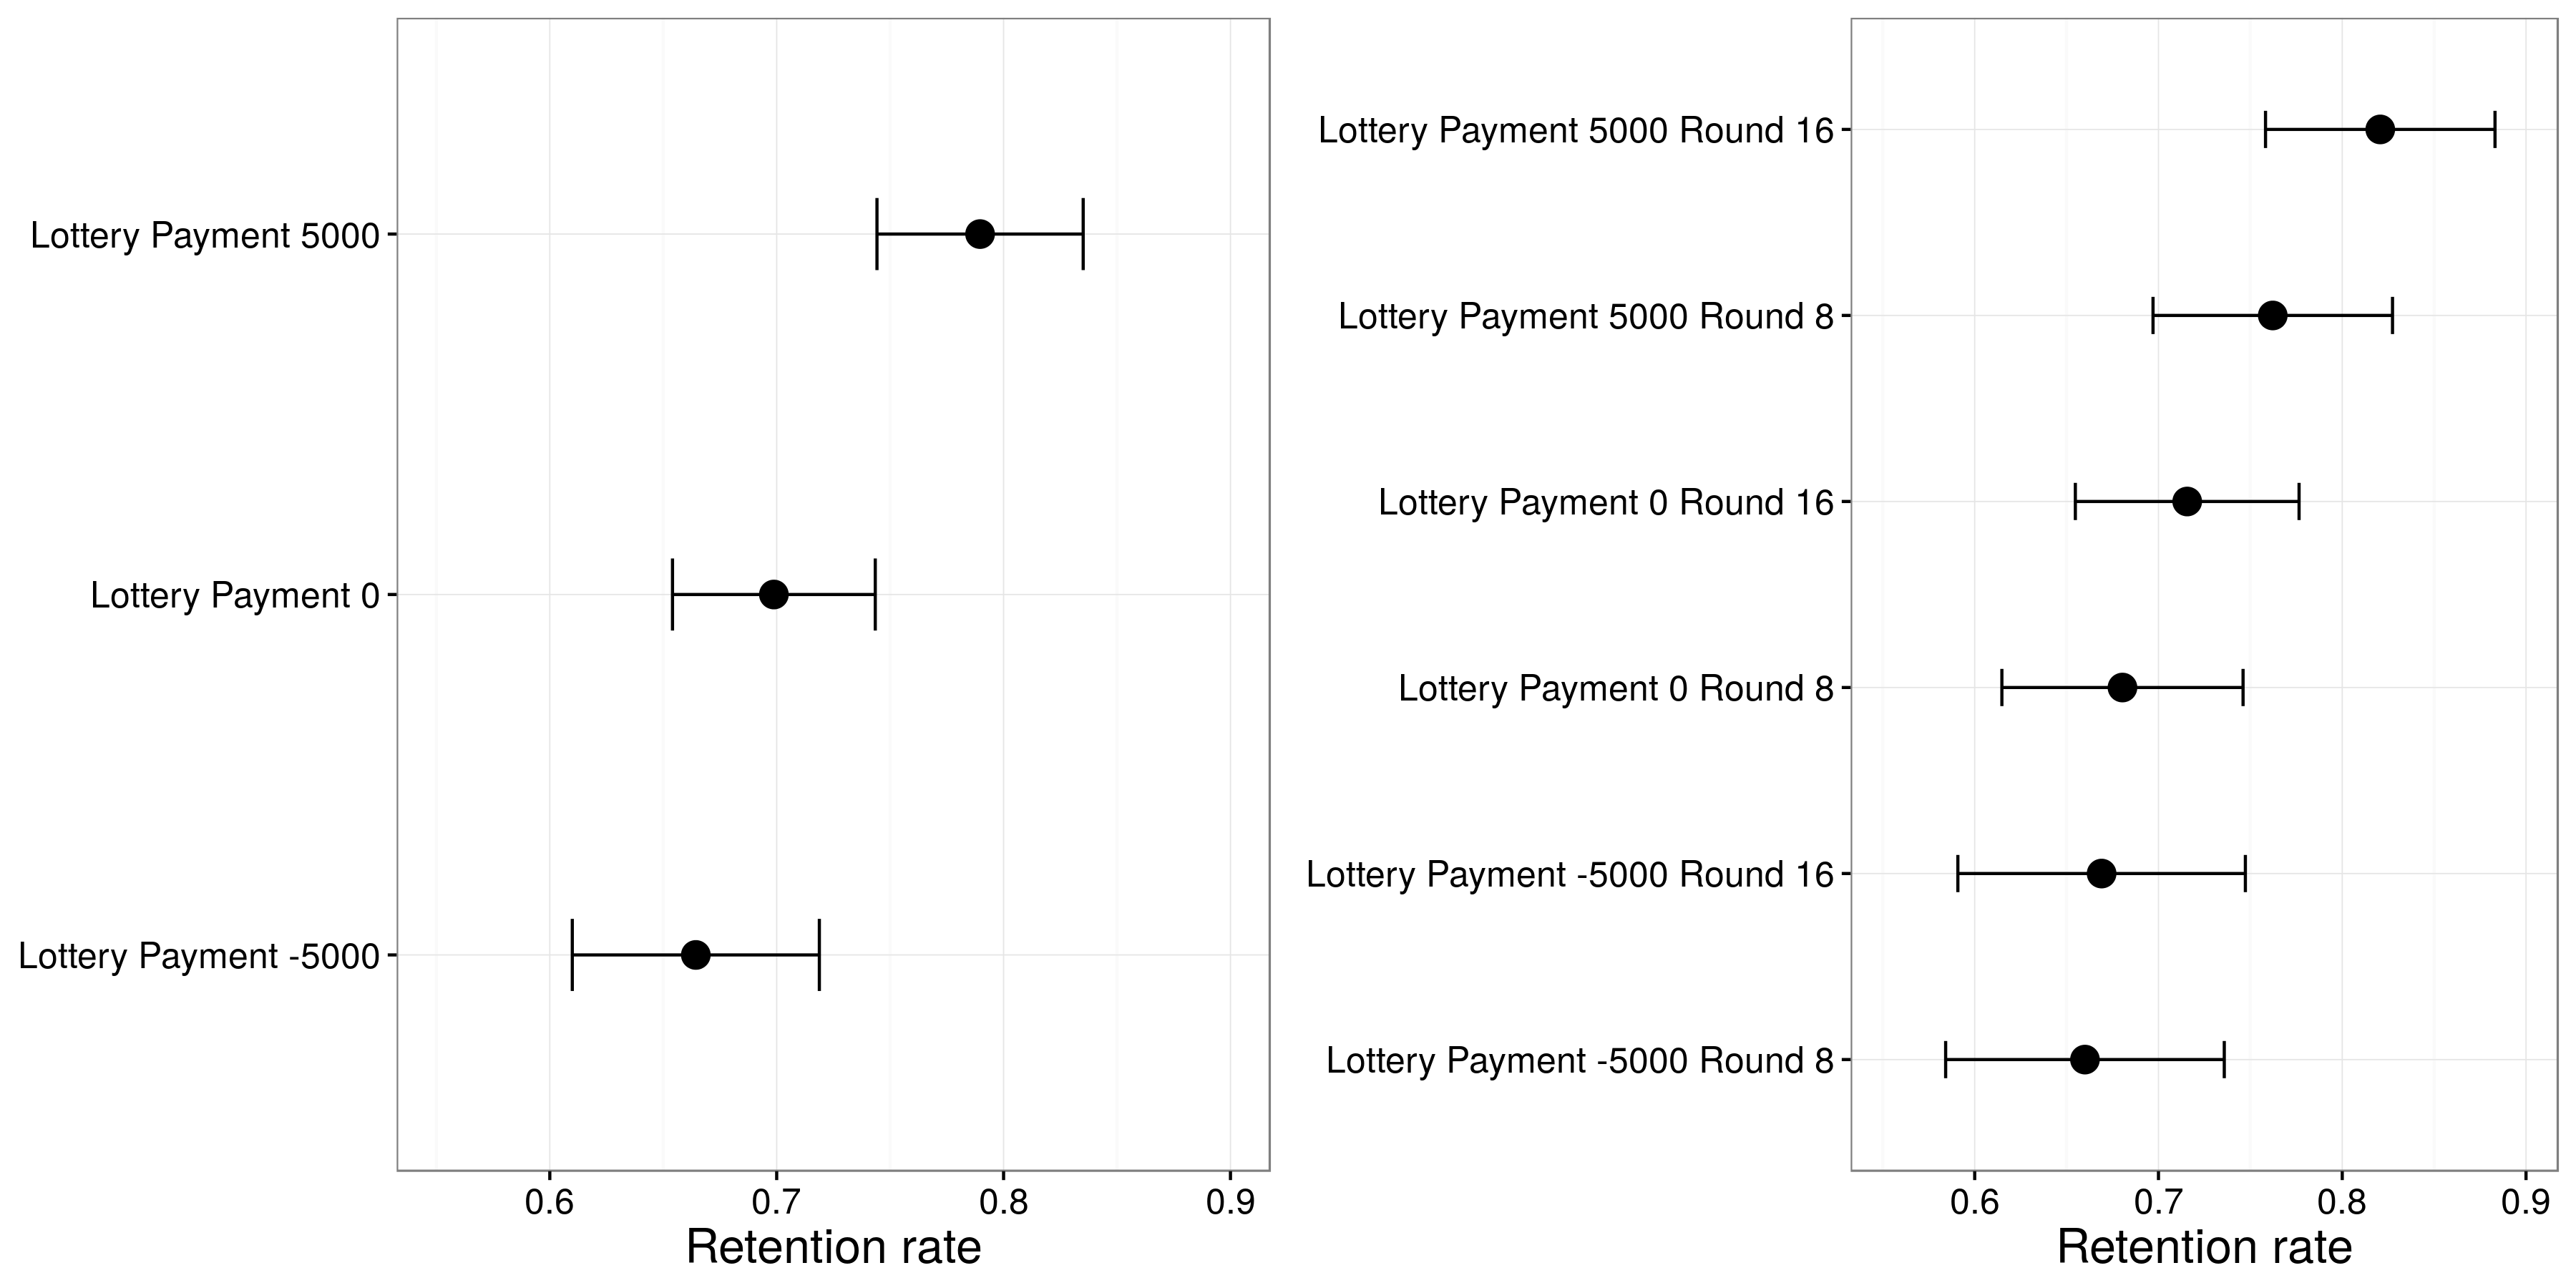 Рисунок 4.15: Результаты от Huber, Hill и Lenz (2012). Участники, выигравшие в лотерее, с большей вероятностью сохранили свой распределитель, и этот эффект был сильнее, когда лотерея произошла в раунде 16 - прямо перед заменяющим решением - чем когда это произошло в раунде 8. Адаптировано из Huber, Hill и Lenz ( 2012), рис. 5.